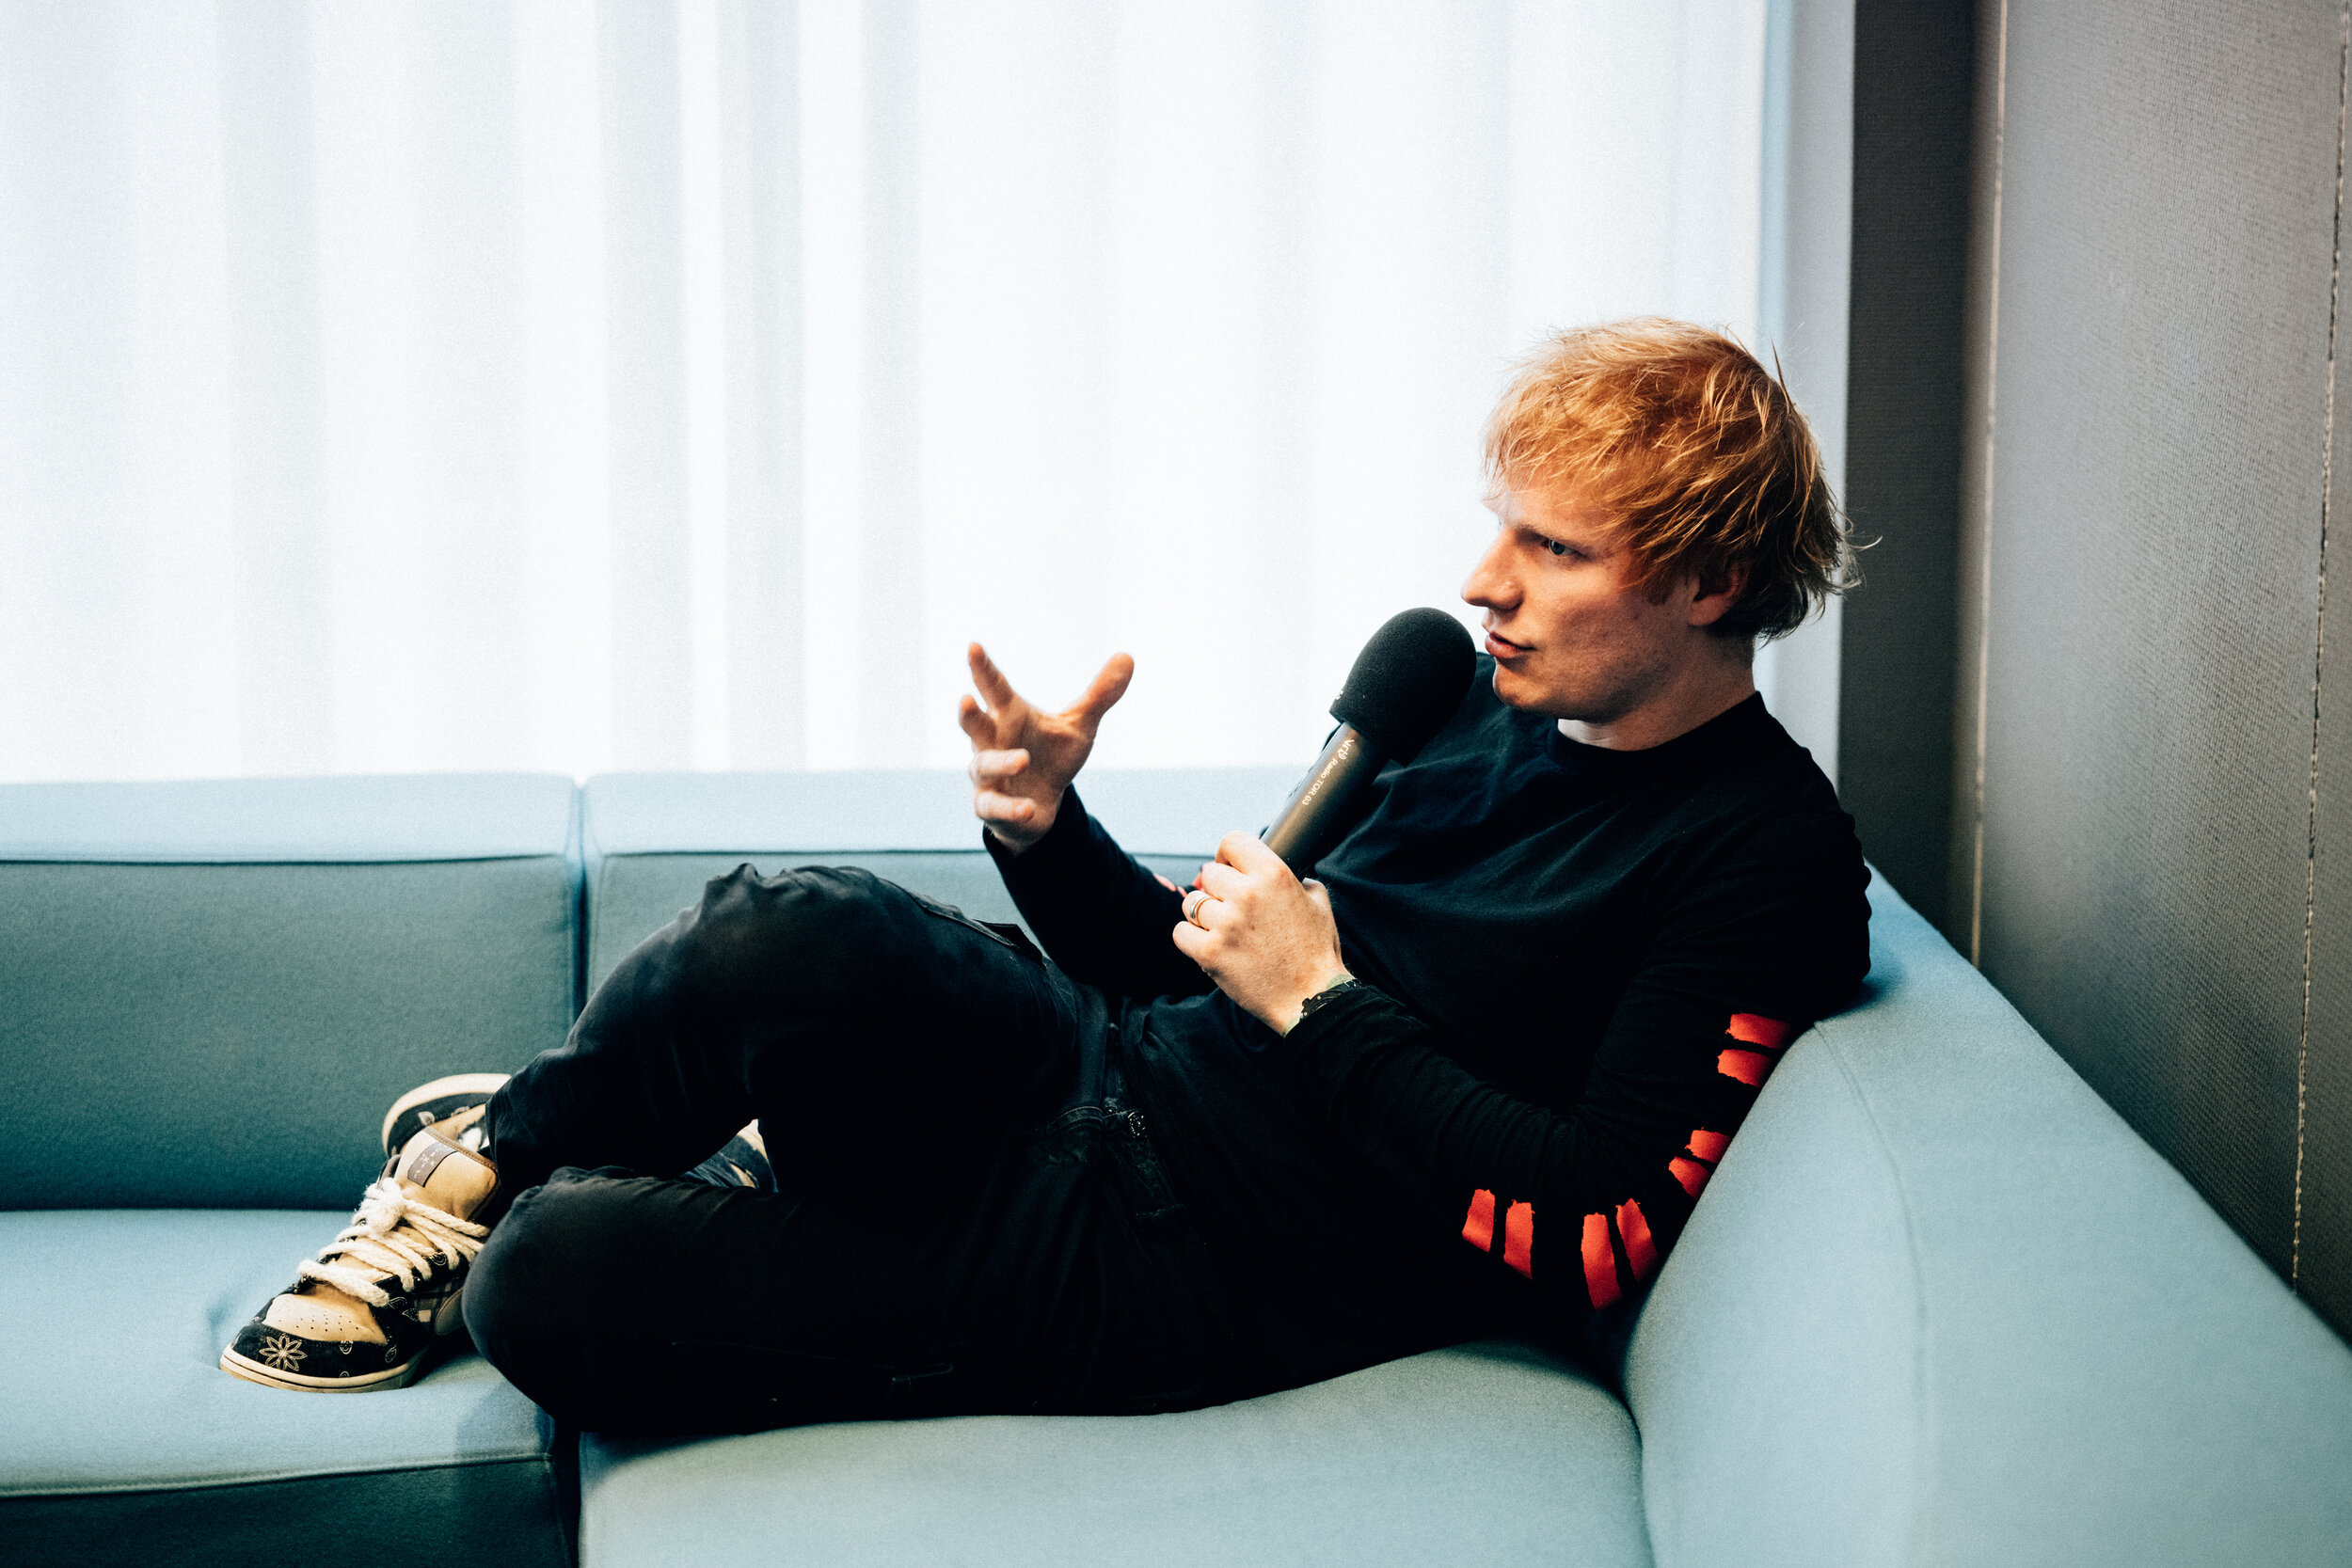 2021-10-04 - Ed Sheeran Showcase - 10. Ed Sheeran - Popcast Stijn Van de Voorde @ Vrt (Brussel) - 008.jpg